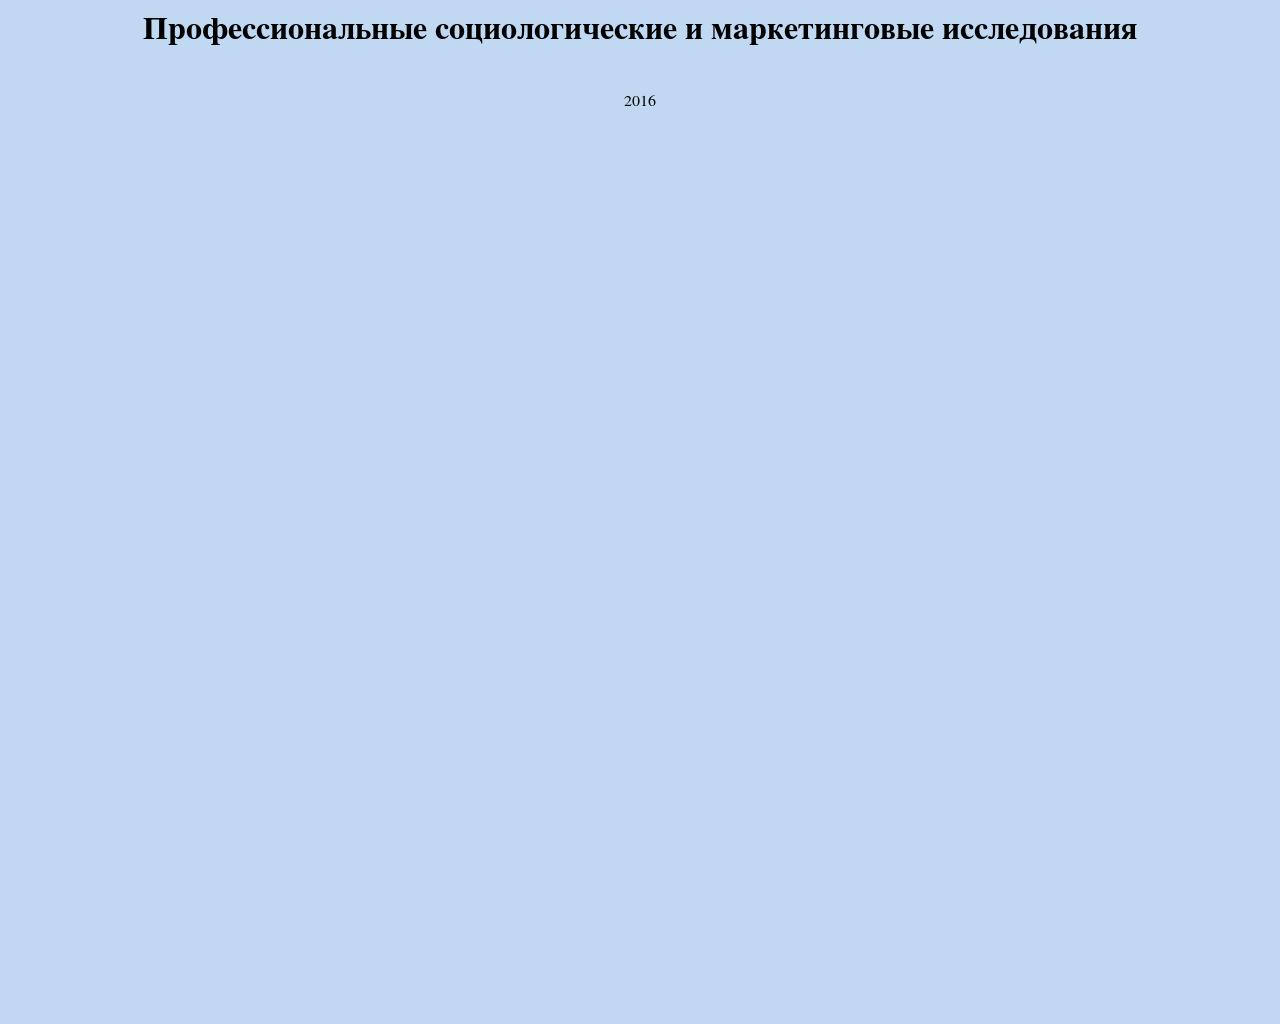 Изображение сайта 1020.ru в разрешении 1280x1024